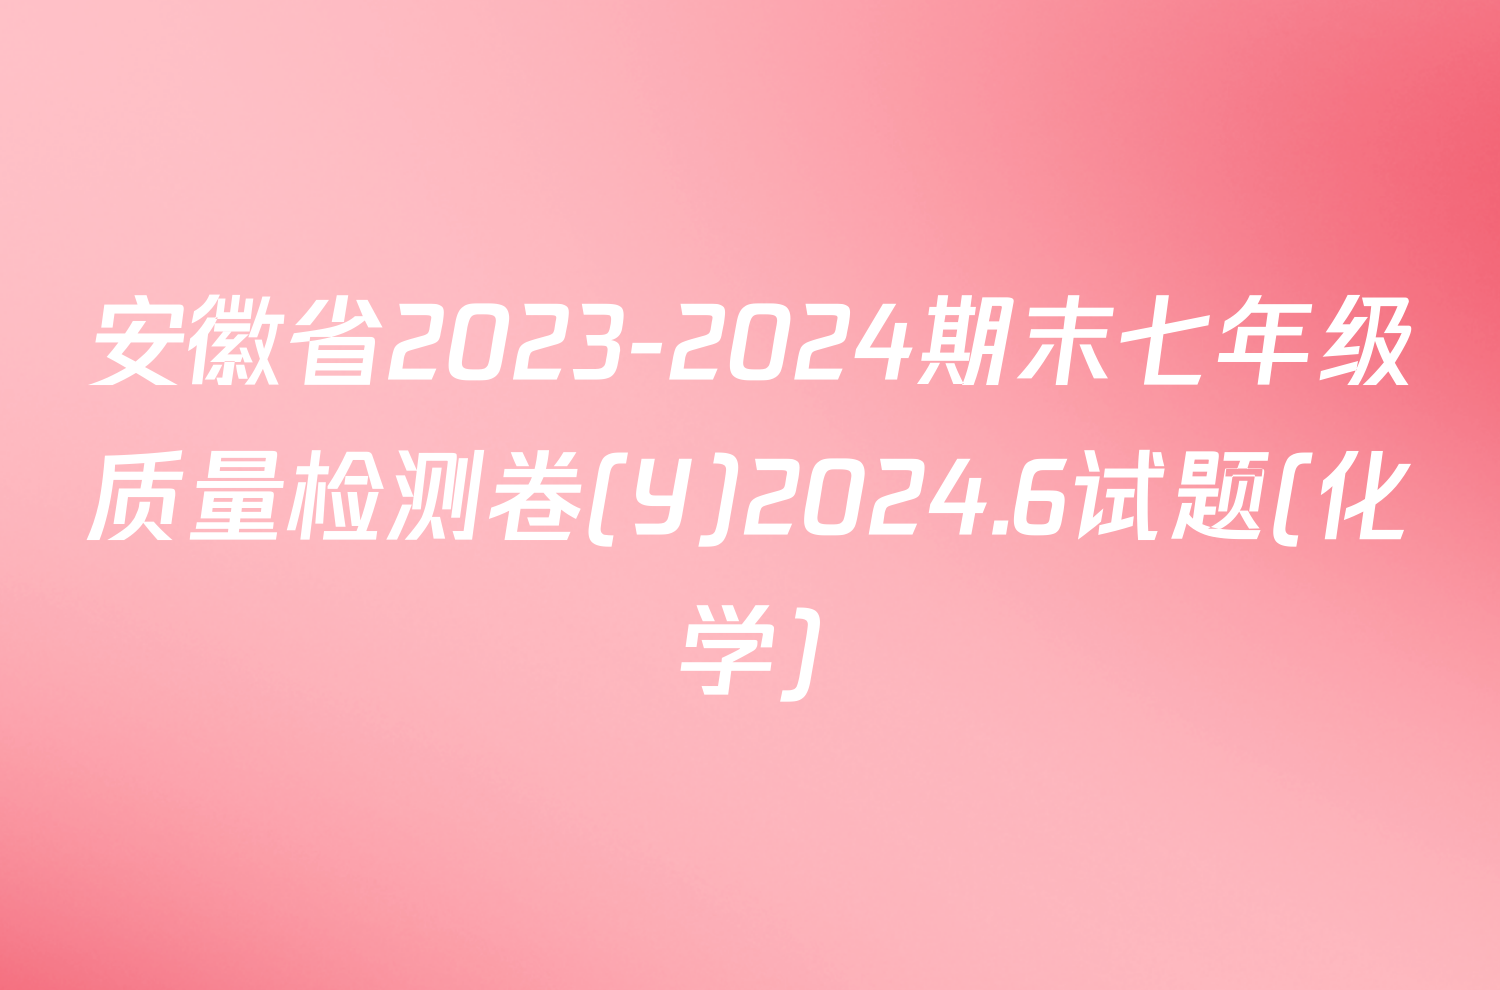 安徽省2023-2024期末七年级质量检测卷(Y)2024.6试题(化学)